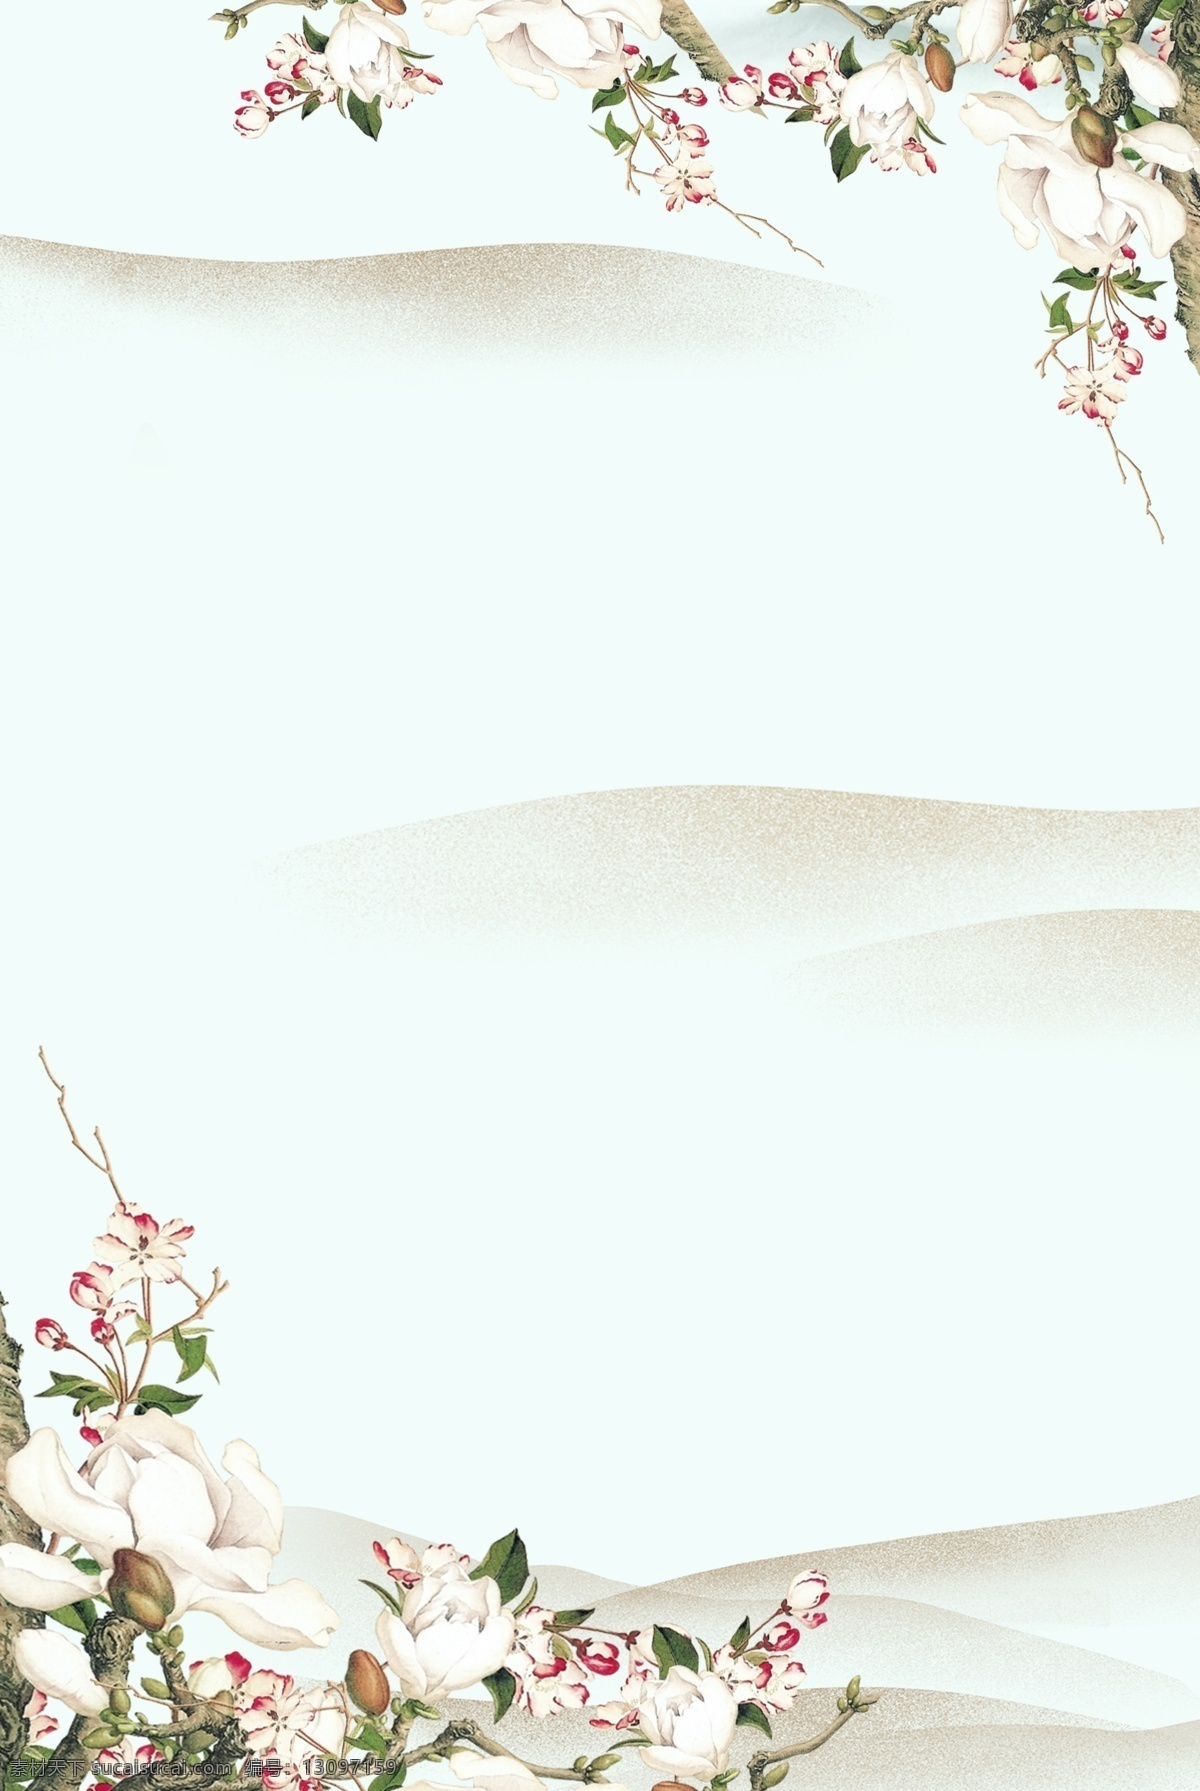 水墨 素雅 花朵 边框 背景 简约 边框背景 花朵边框 文艺 植物 叶子 清新